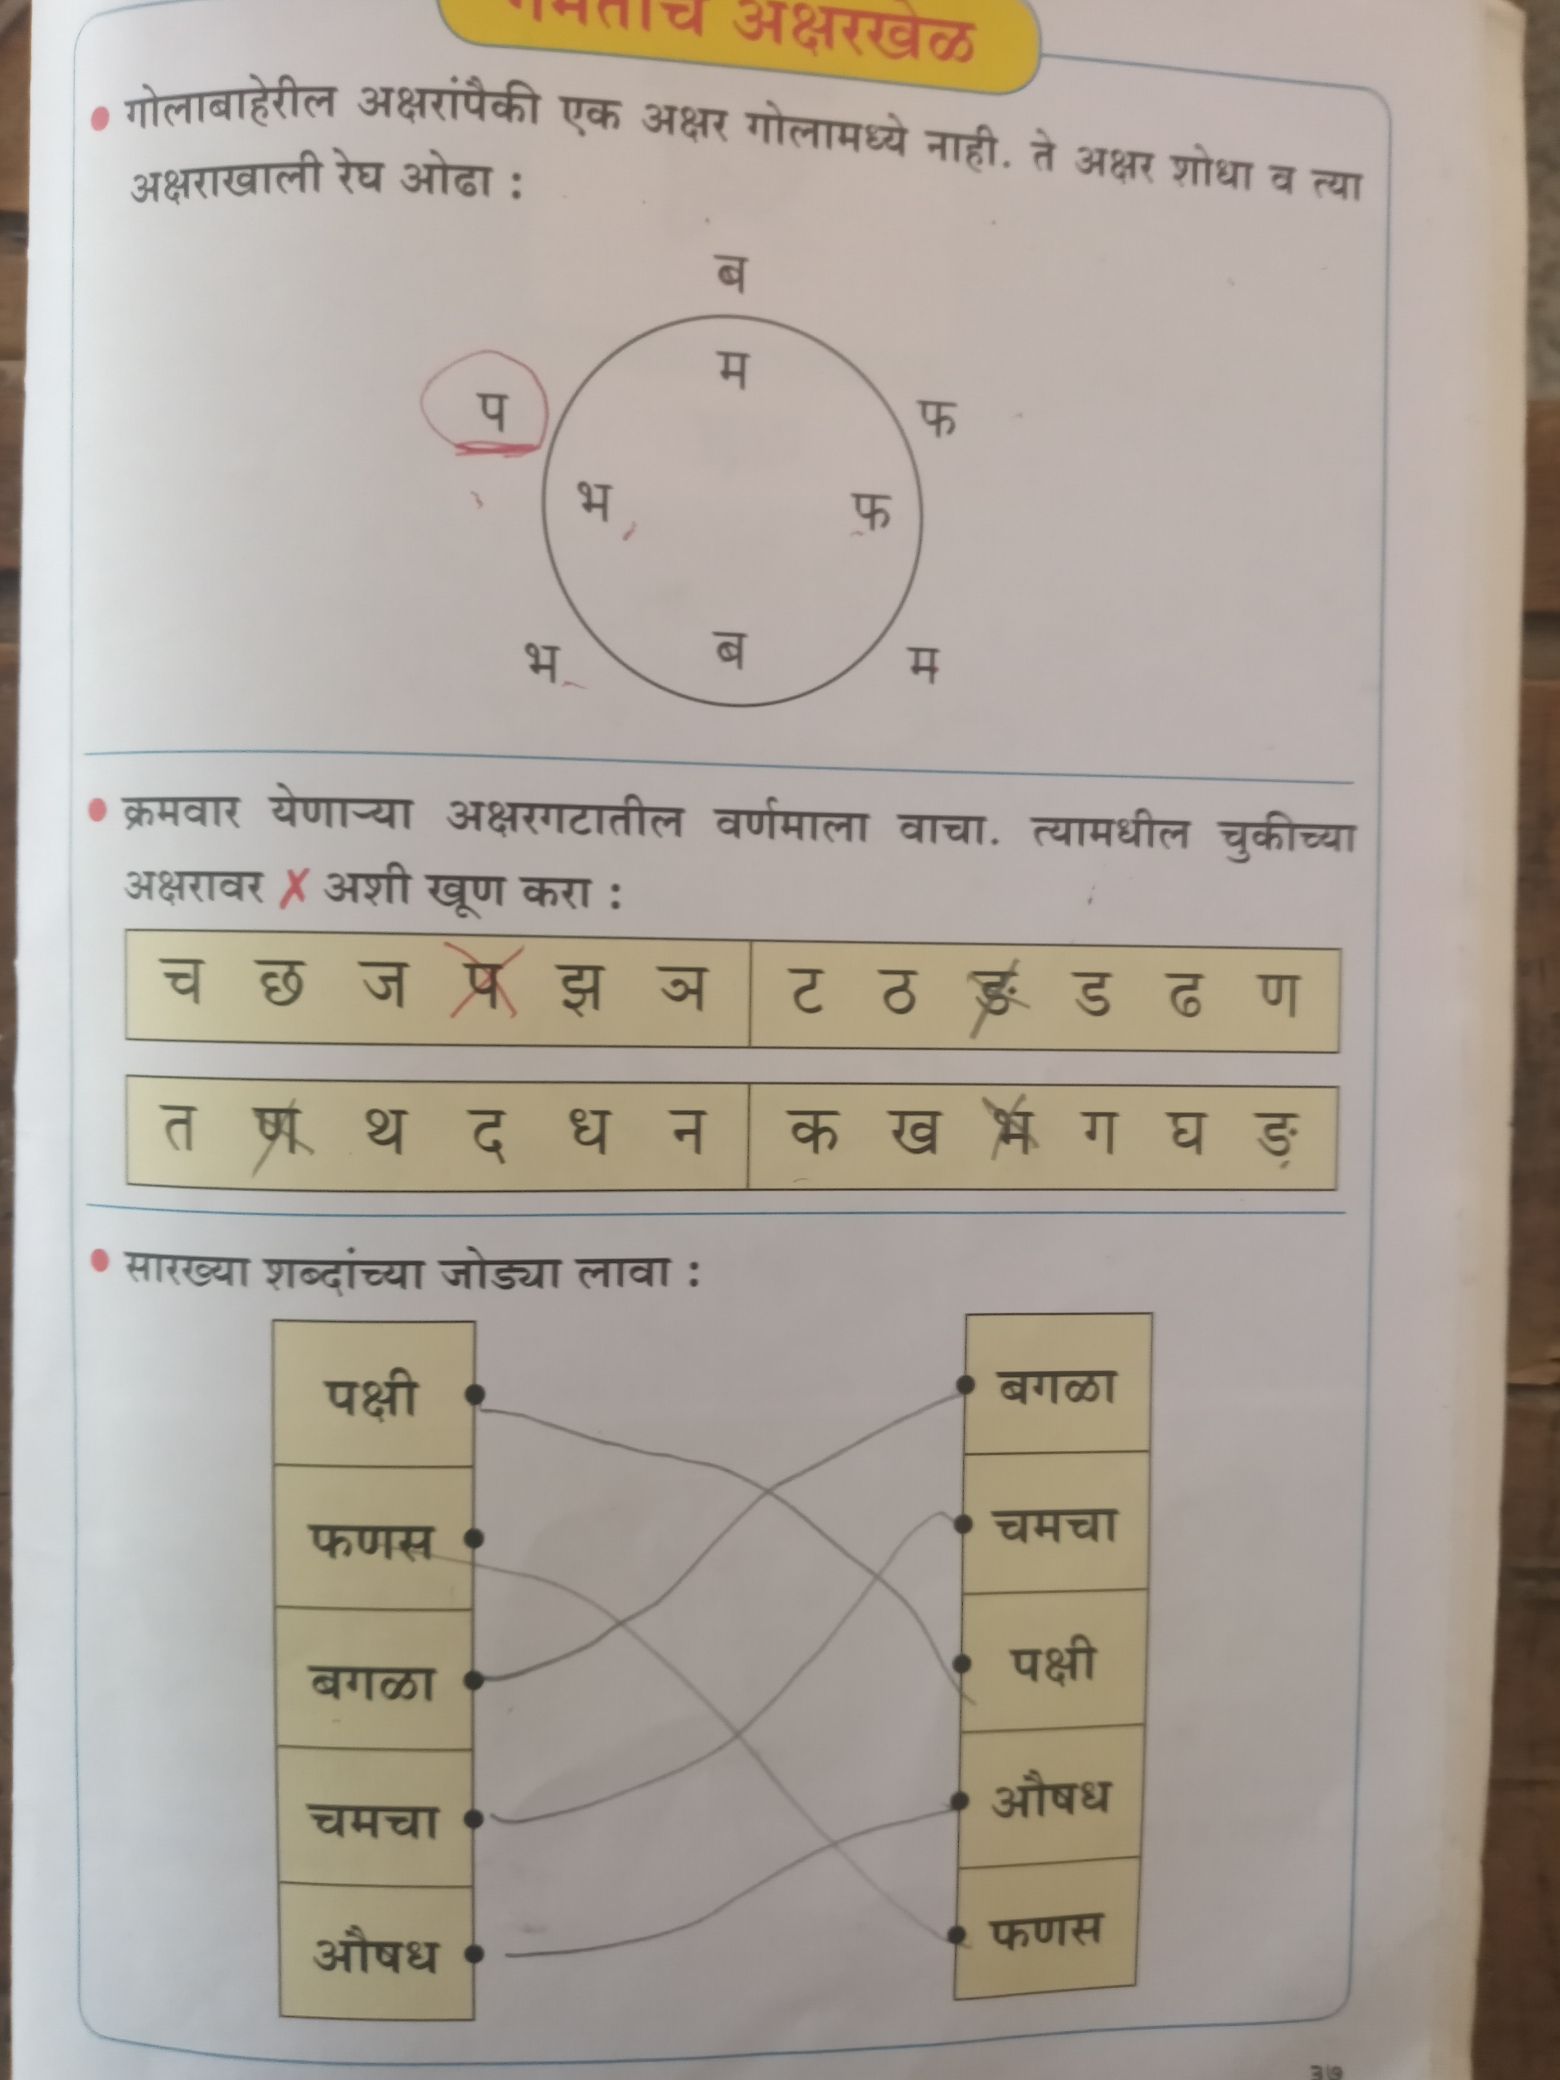 assignment in marathi language